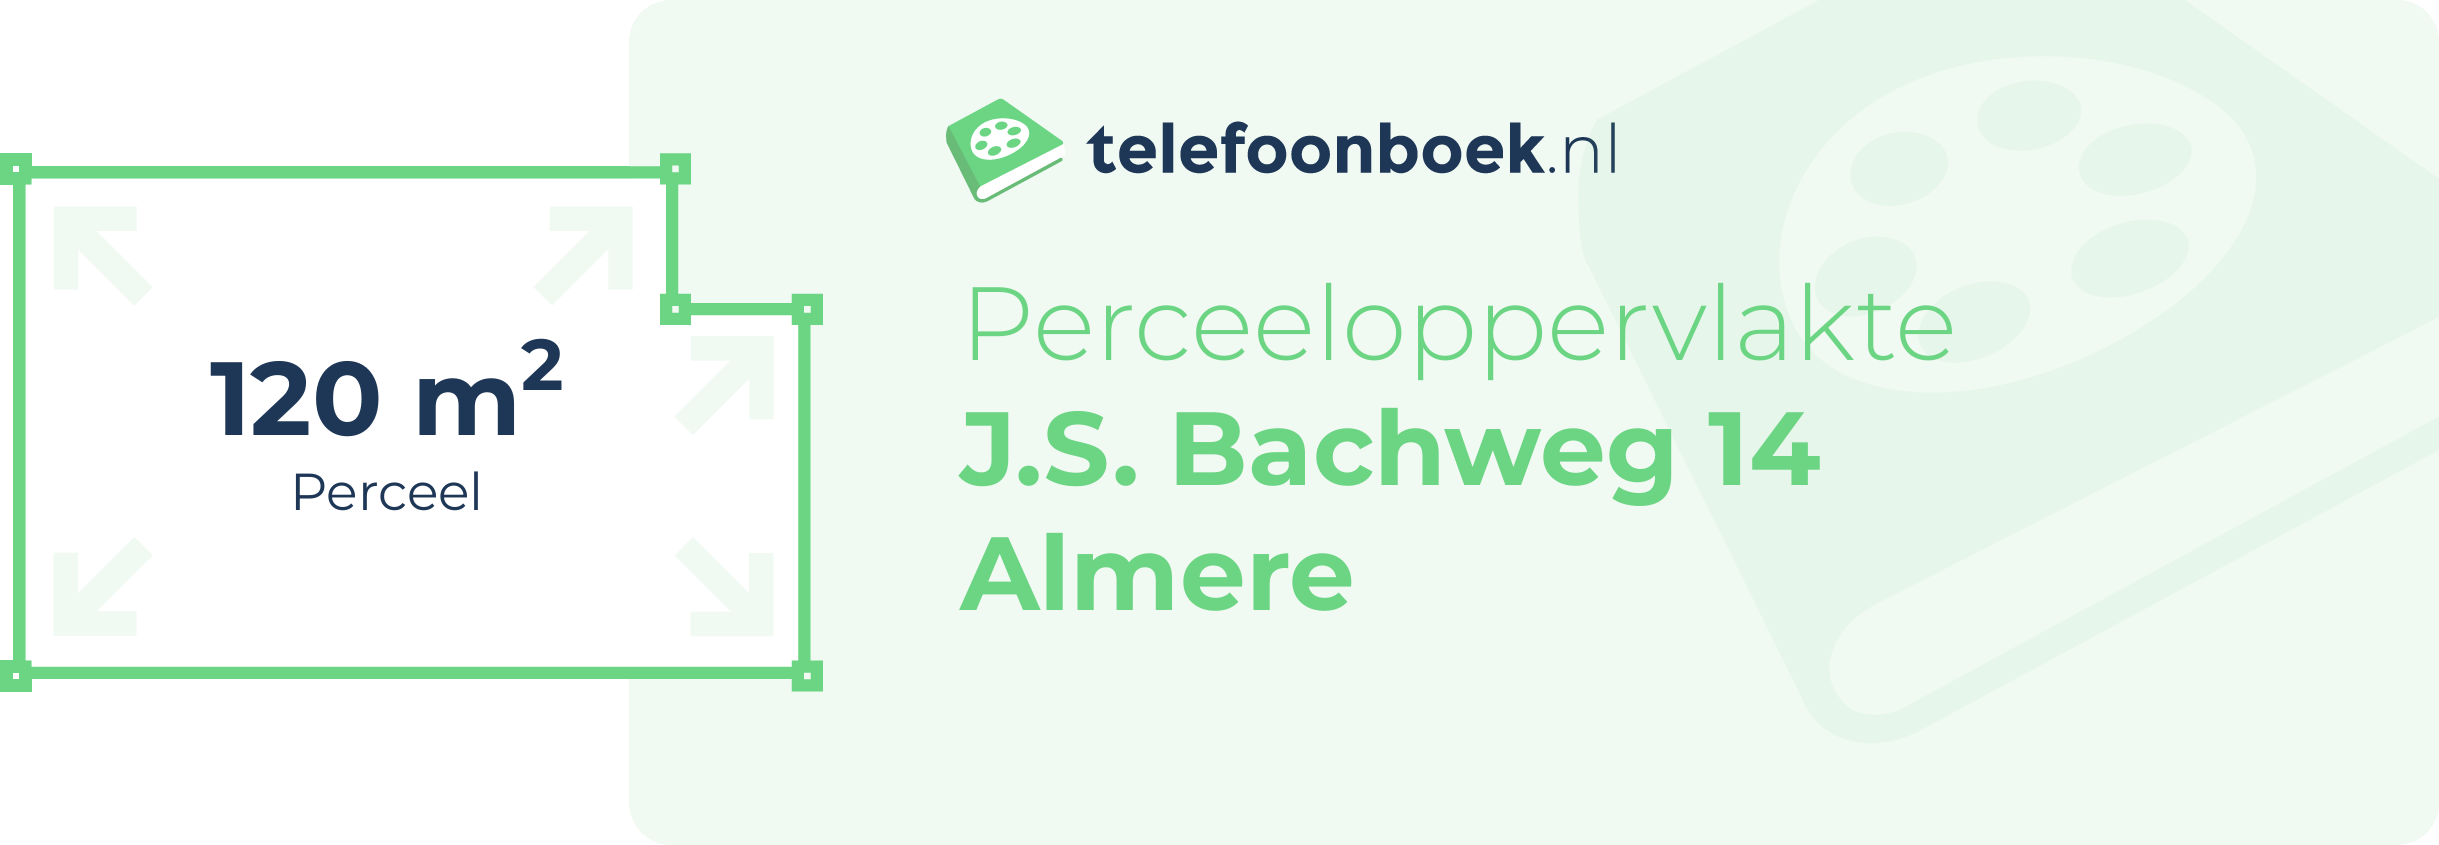 Perceeloppervlakte J.S. Bachweg 14 Almere